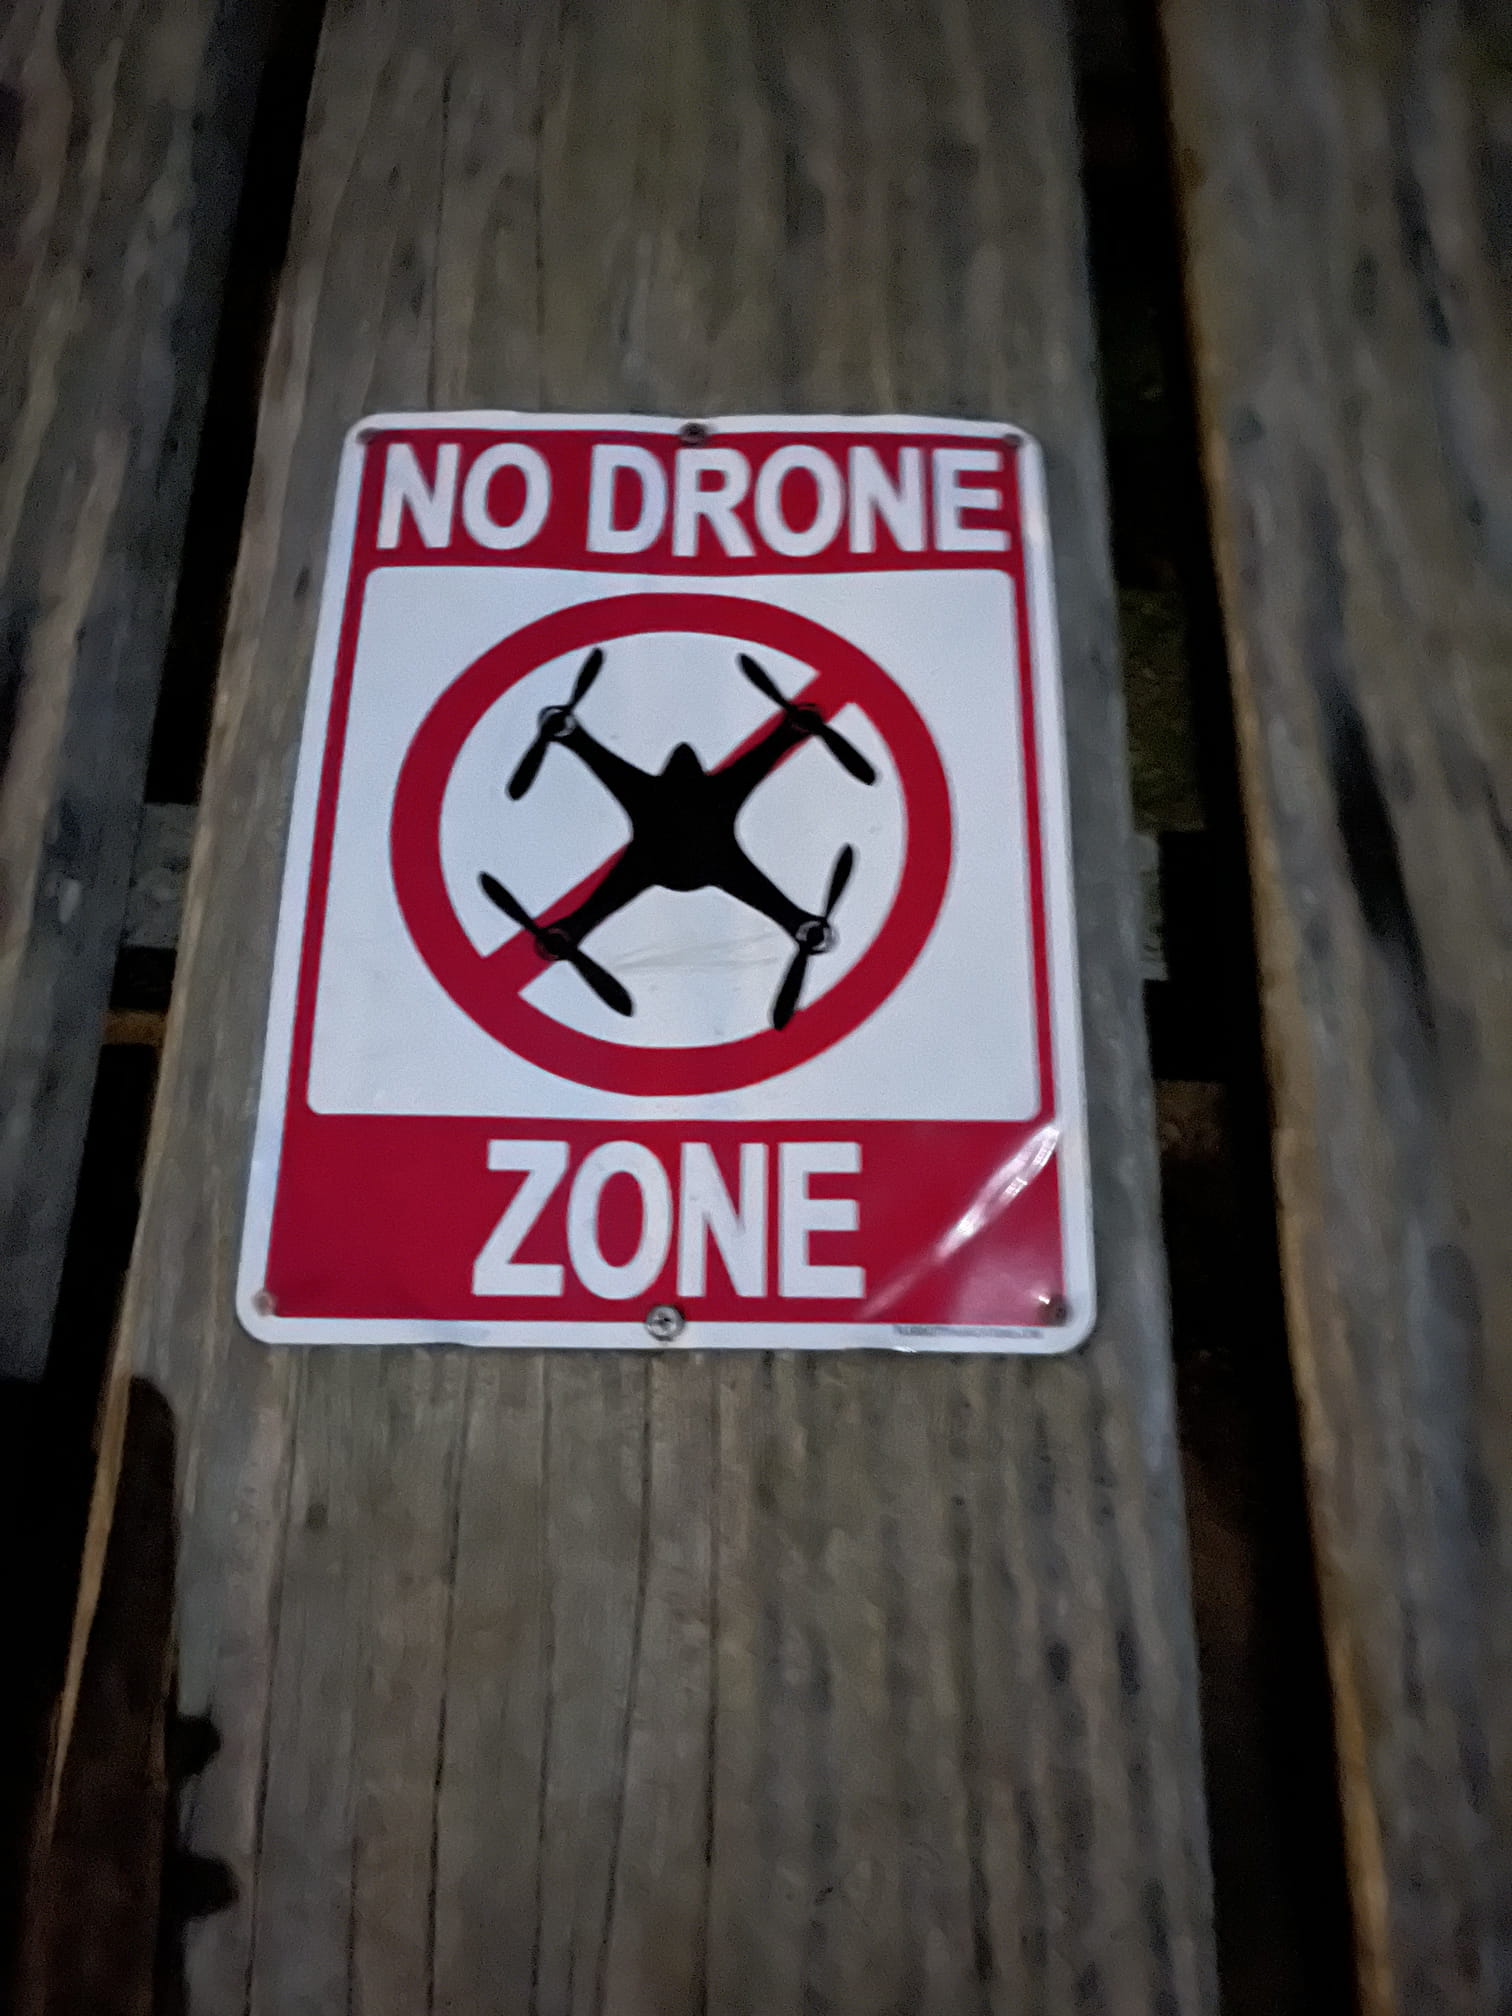 No drone zone